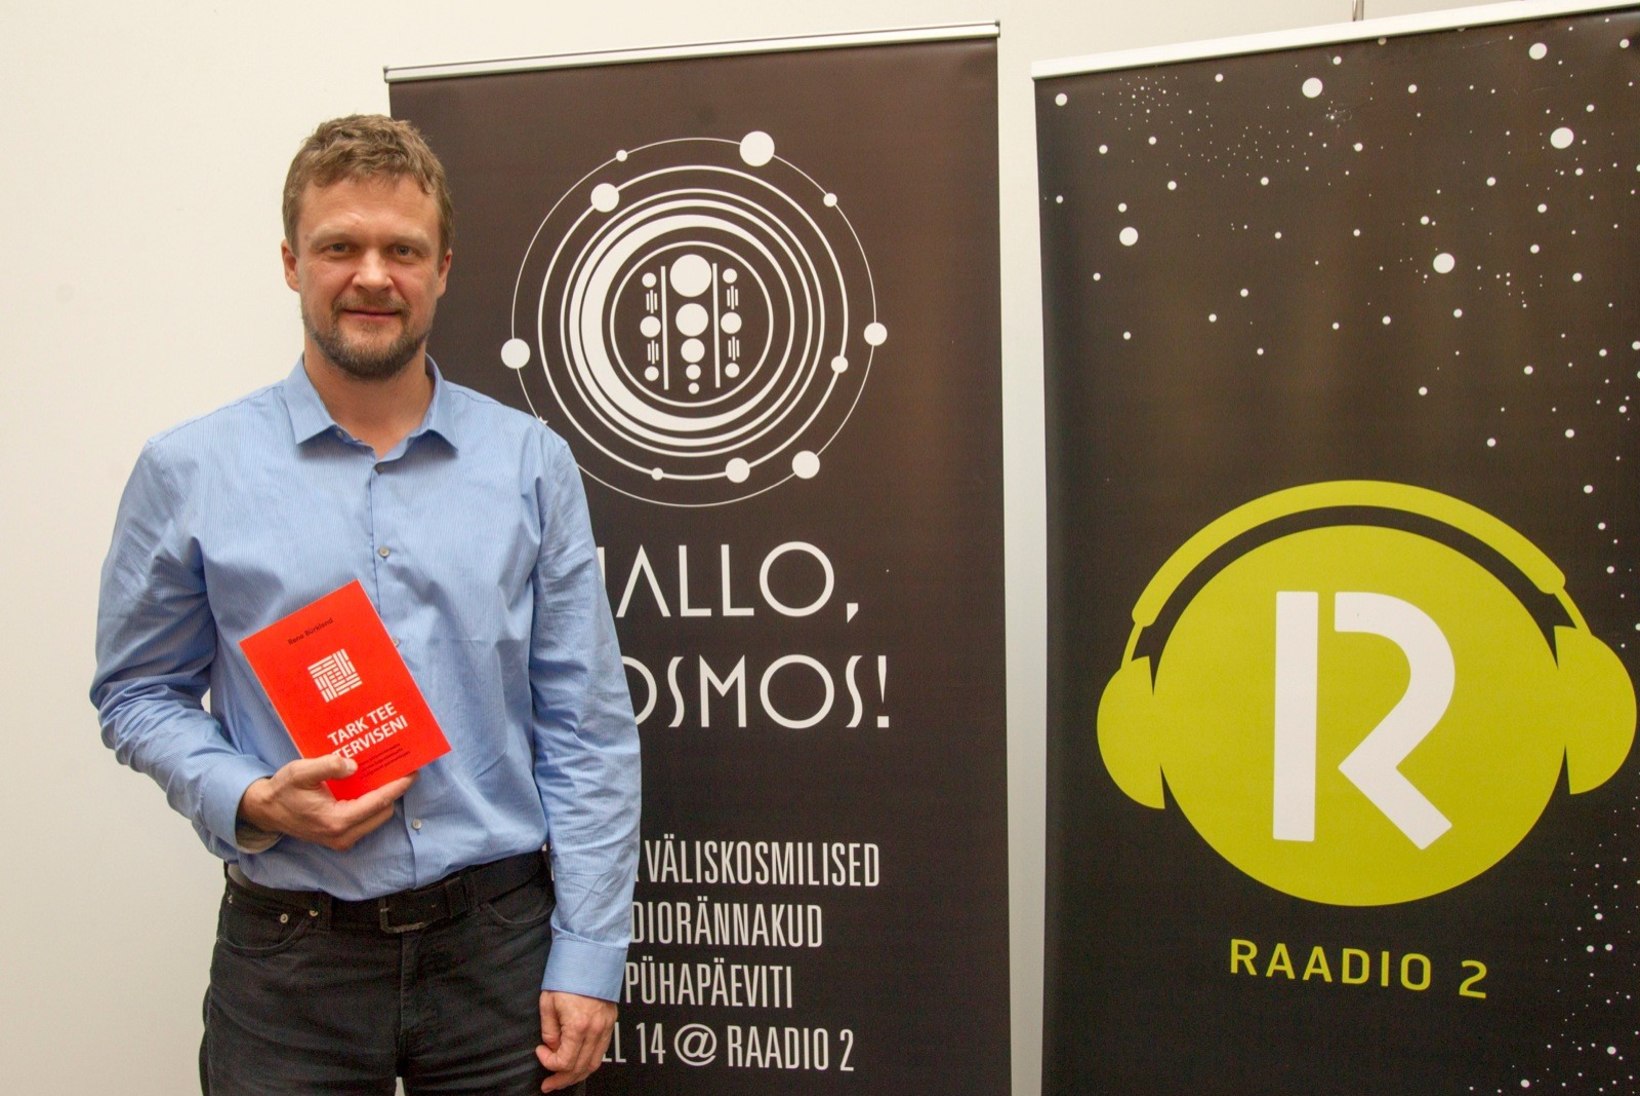 GALERII | Rene Bürkland esines saate "Hallo, Kosmos!" salvestusel loenguga ja esitles oma raamatut